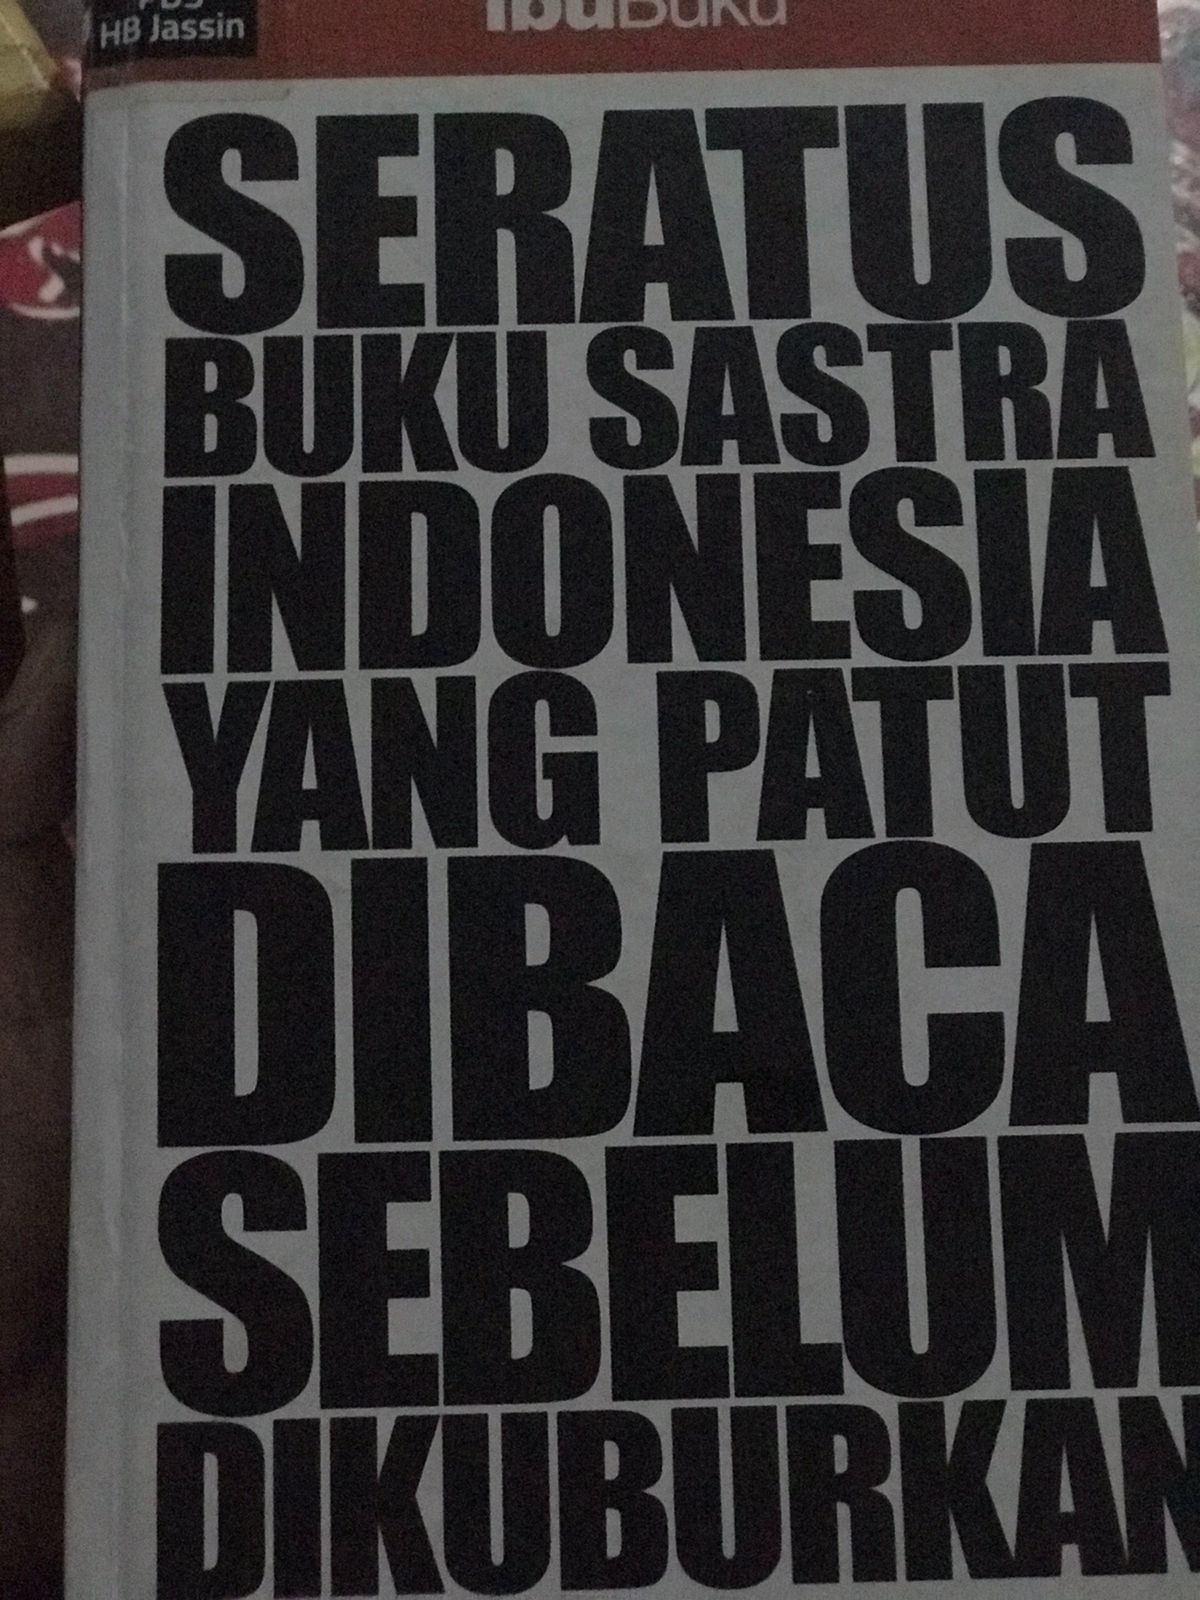 Seratus buku sastra indonesia yang patut dibaca sebelum dikuburkan